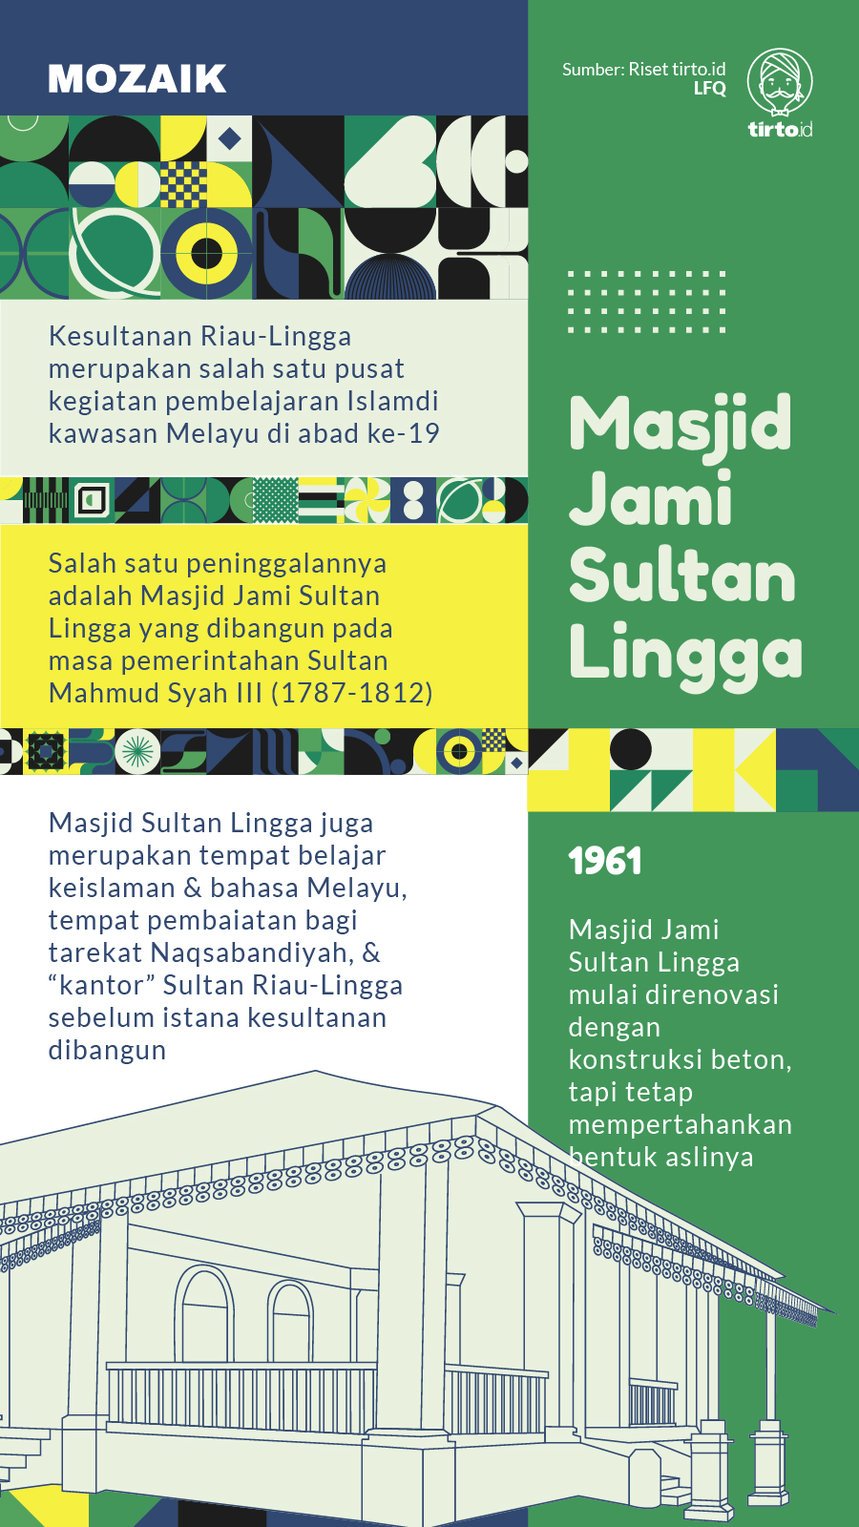 Infografik Mozaik Masjid Jami Sultan Lingga